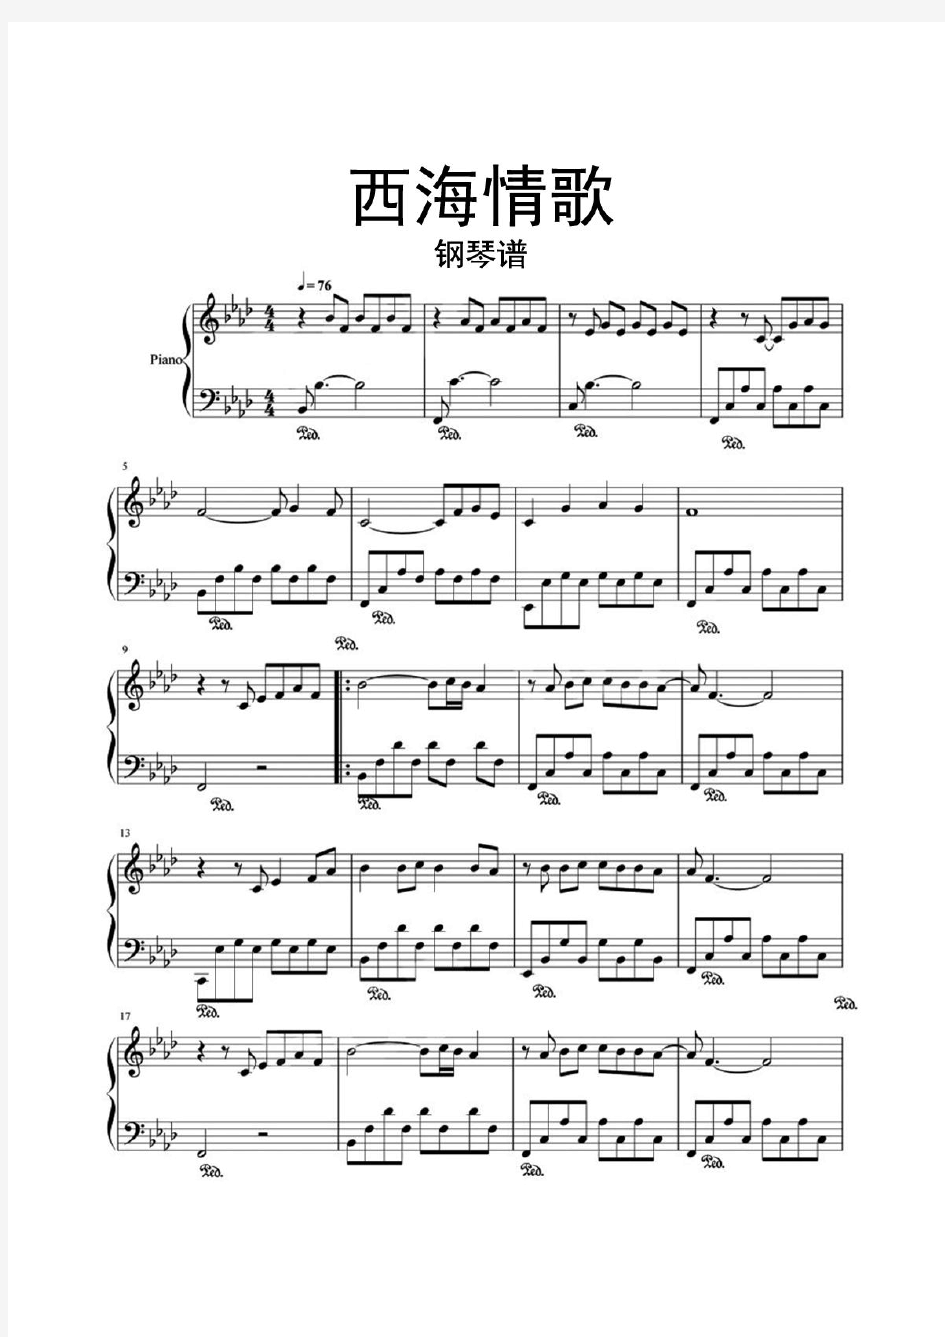 西海情歌钢琴谱乐谱